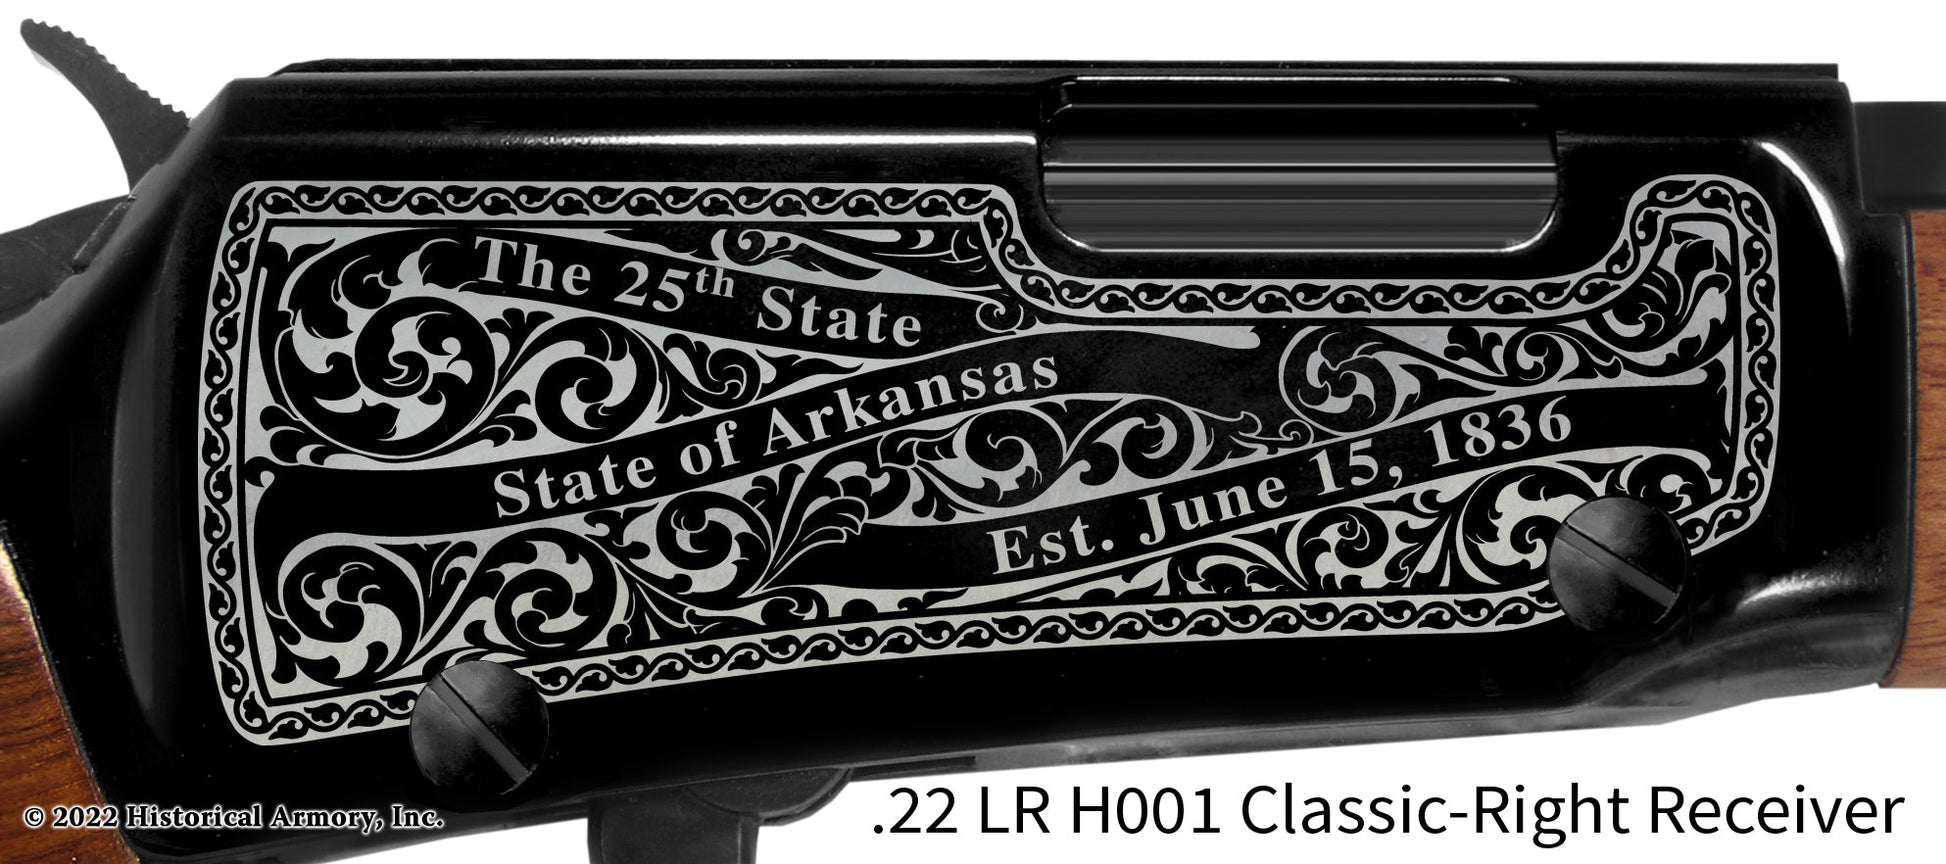 Greene County Arkansas Engraved Henry H001 Rifle